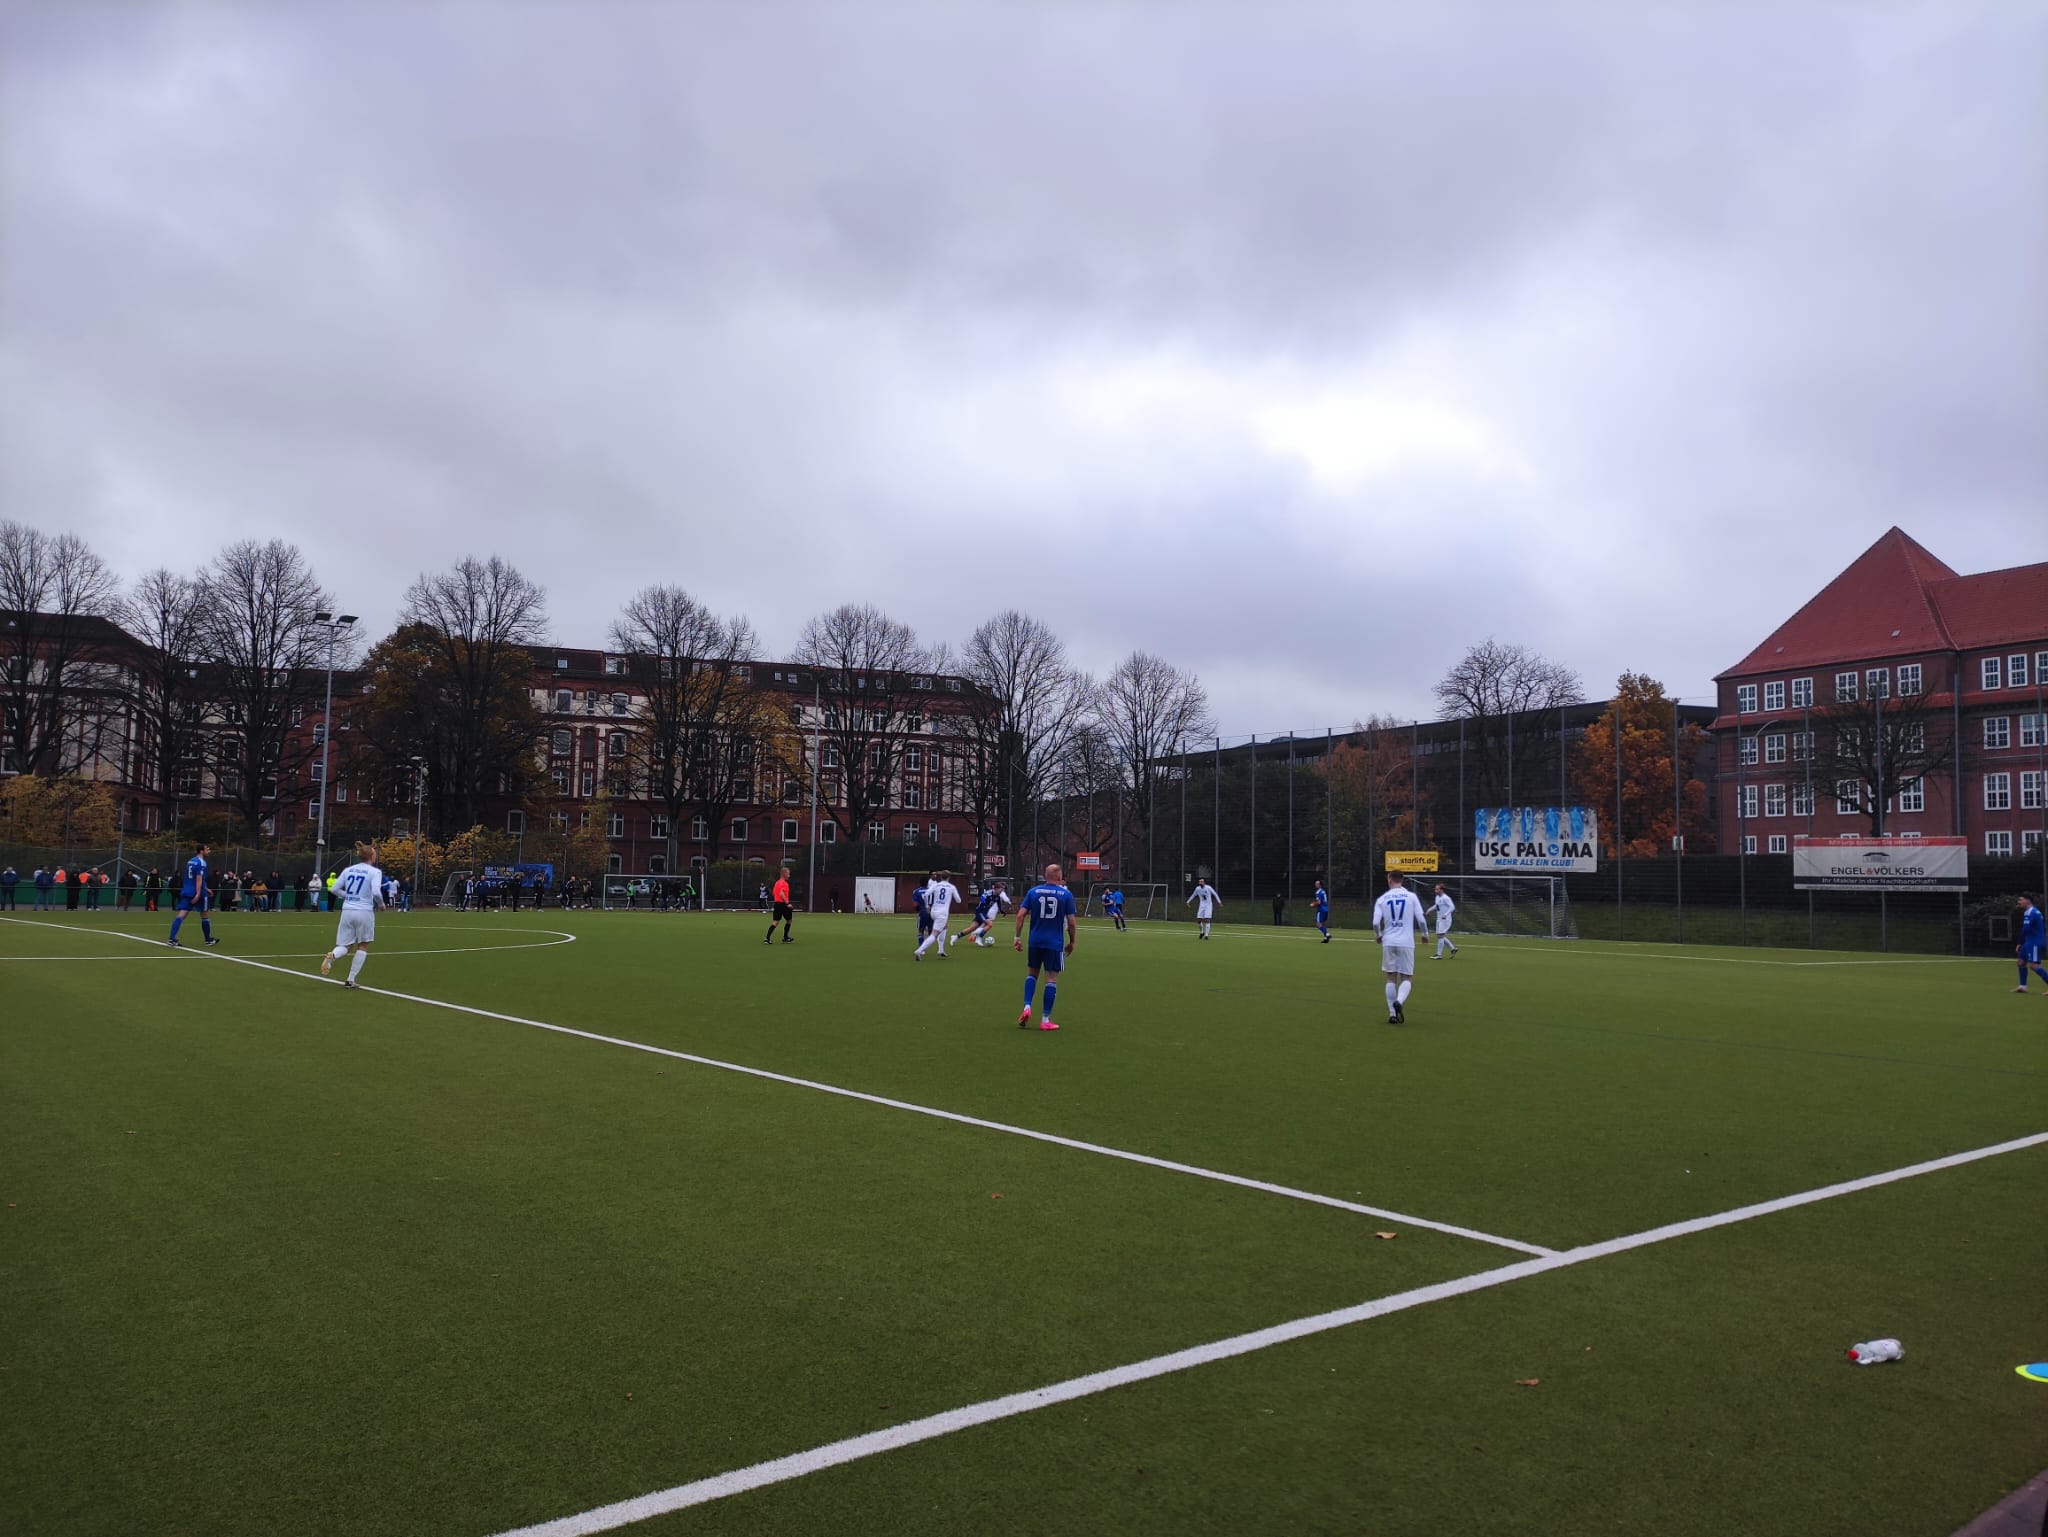 Graues Wetter und ein grauer Kick: das Spiel fühlte sich lange nach einem 0:0 an. (Foto: CKA/oberliga.info)